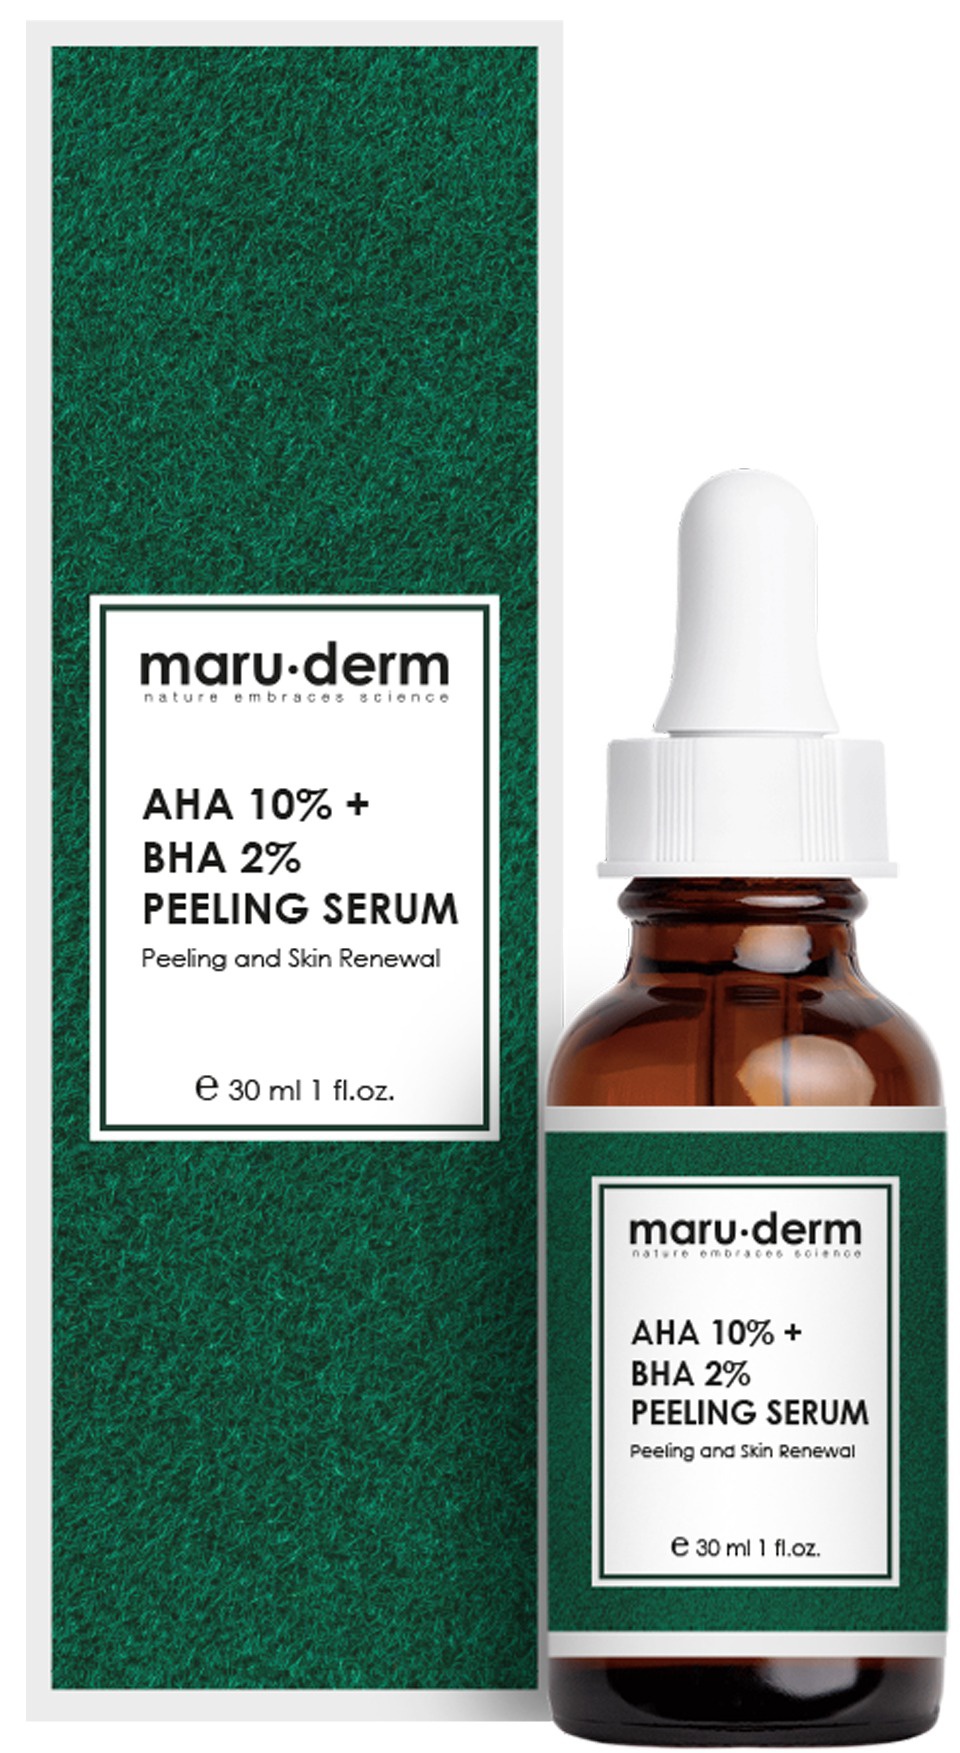 Maruderm AHA 10% + BHA 2% Peeling Serum